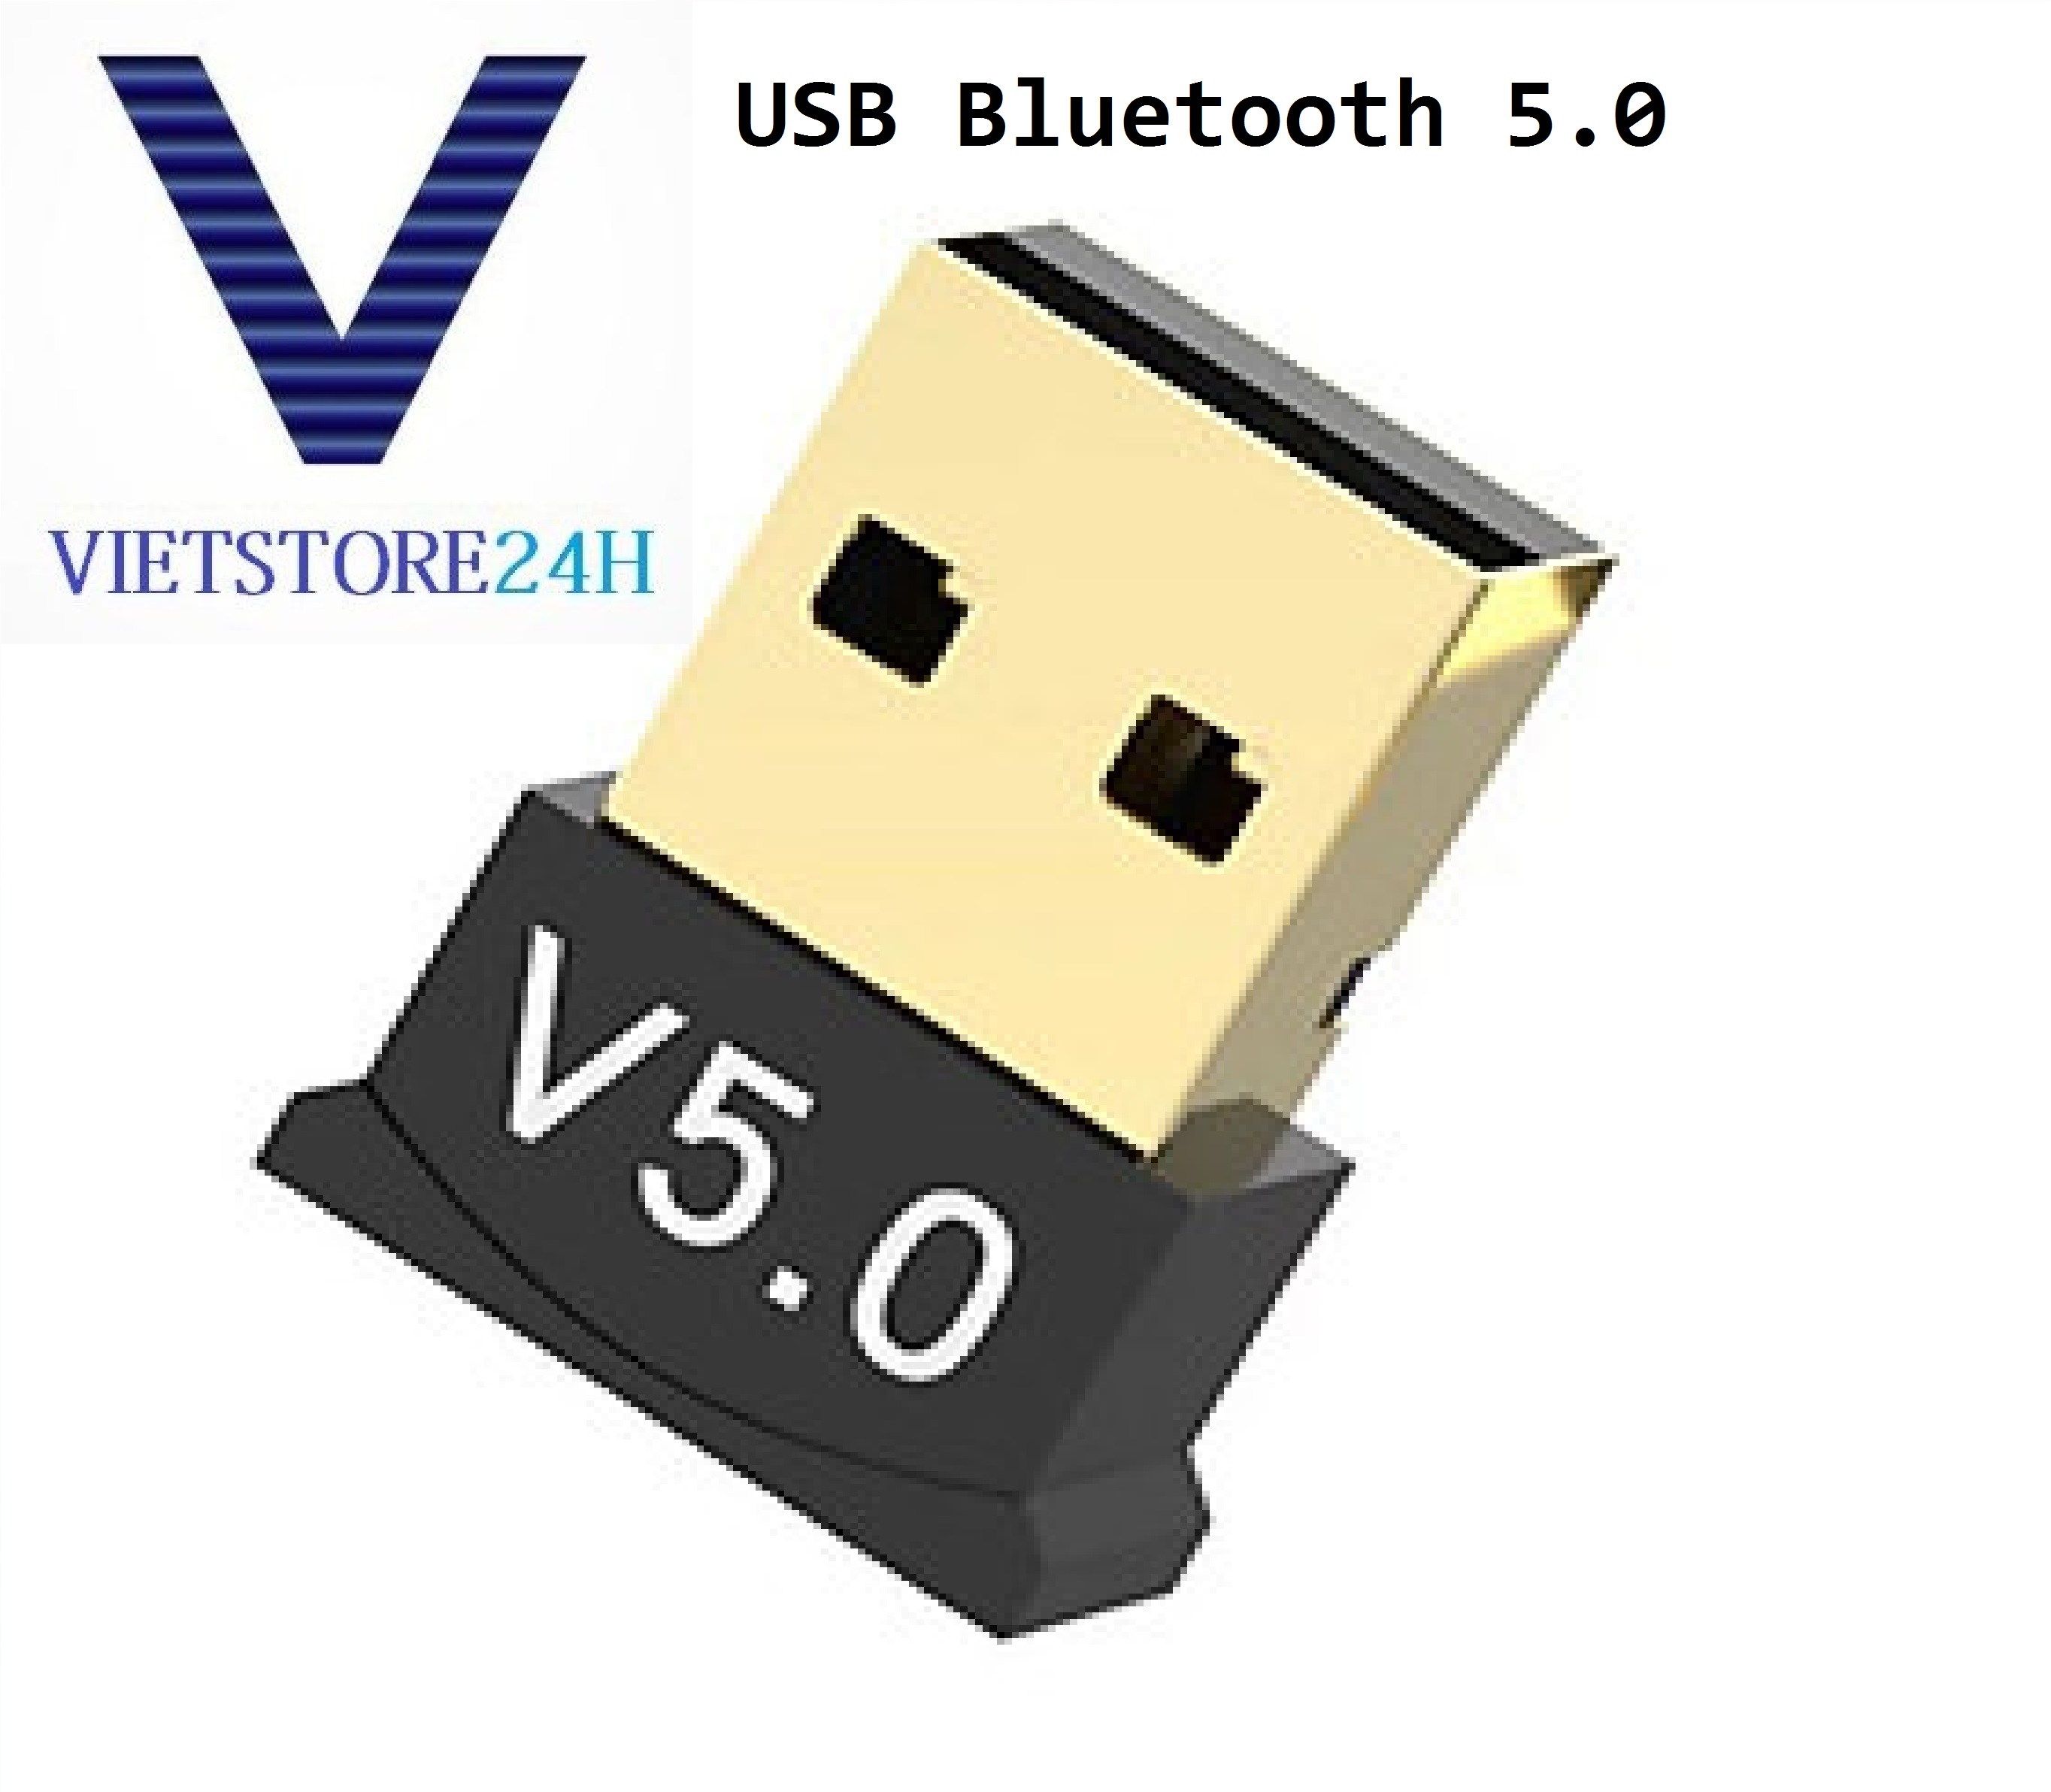 USB Bluetooth 5.0 cho máy tính VT